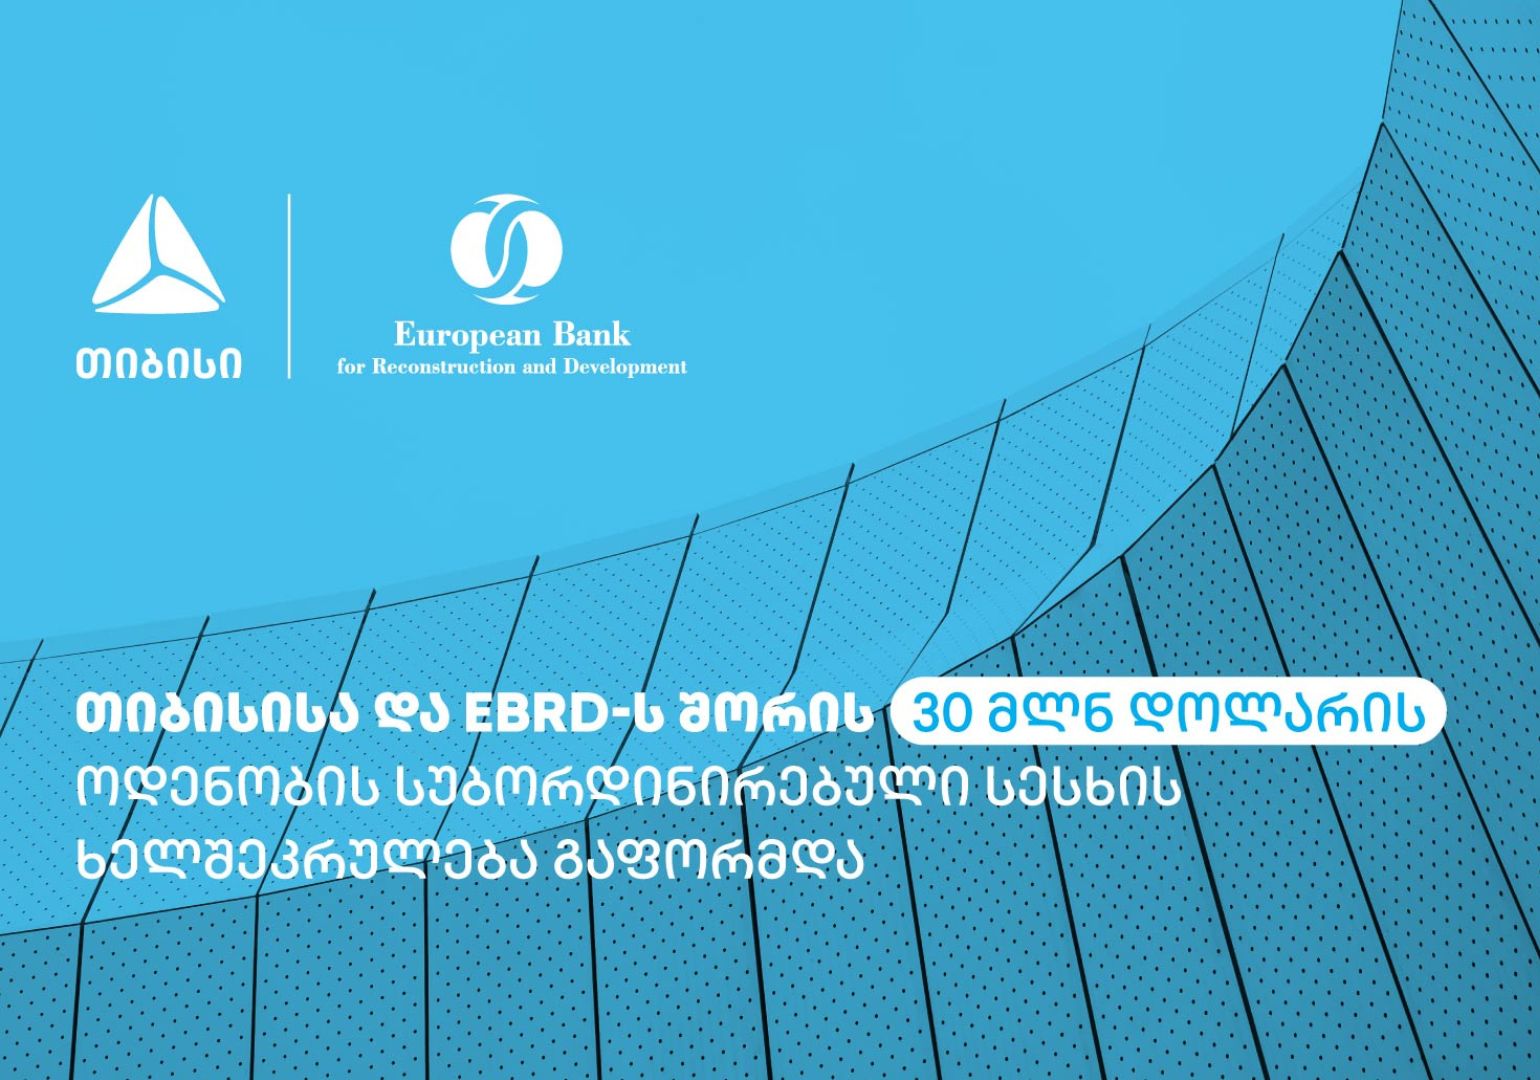 თიბისის და EBRD-ის თანამშრომლობა გაფართოვდა